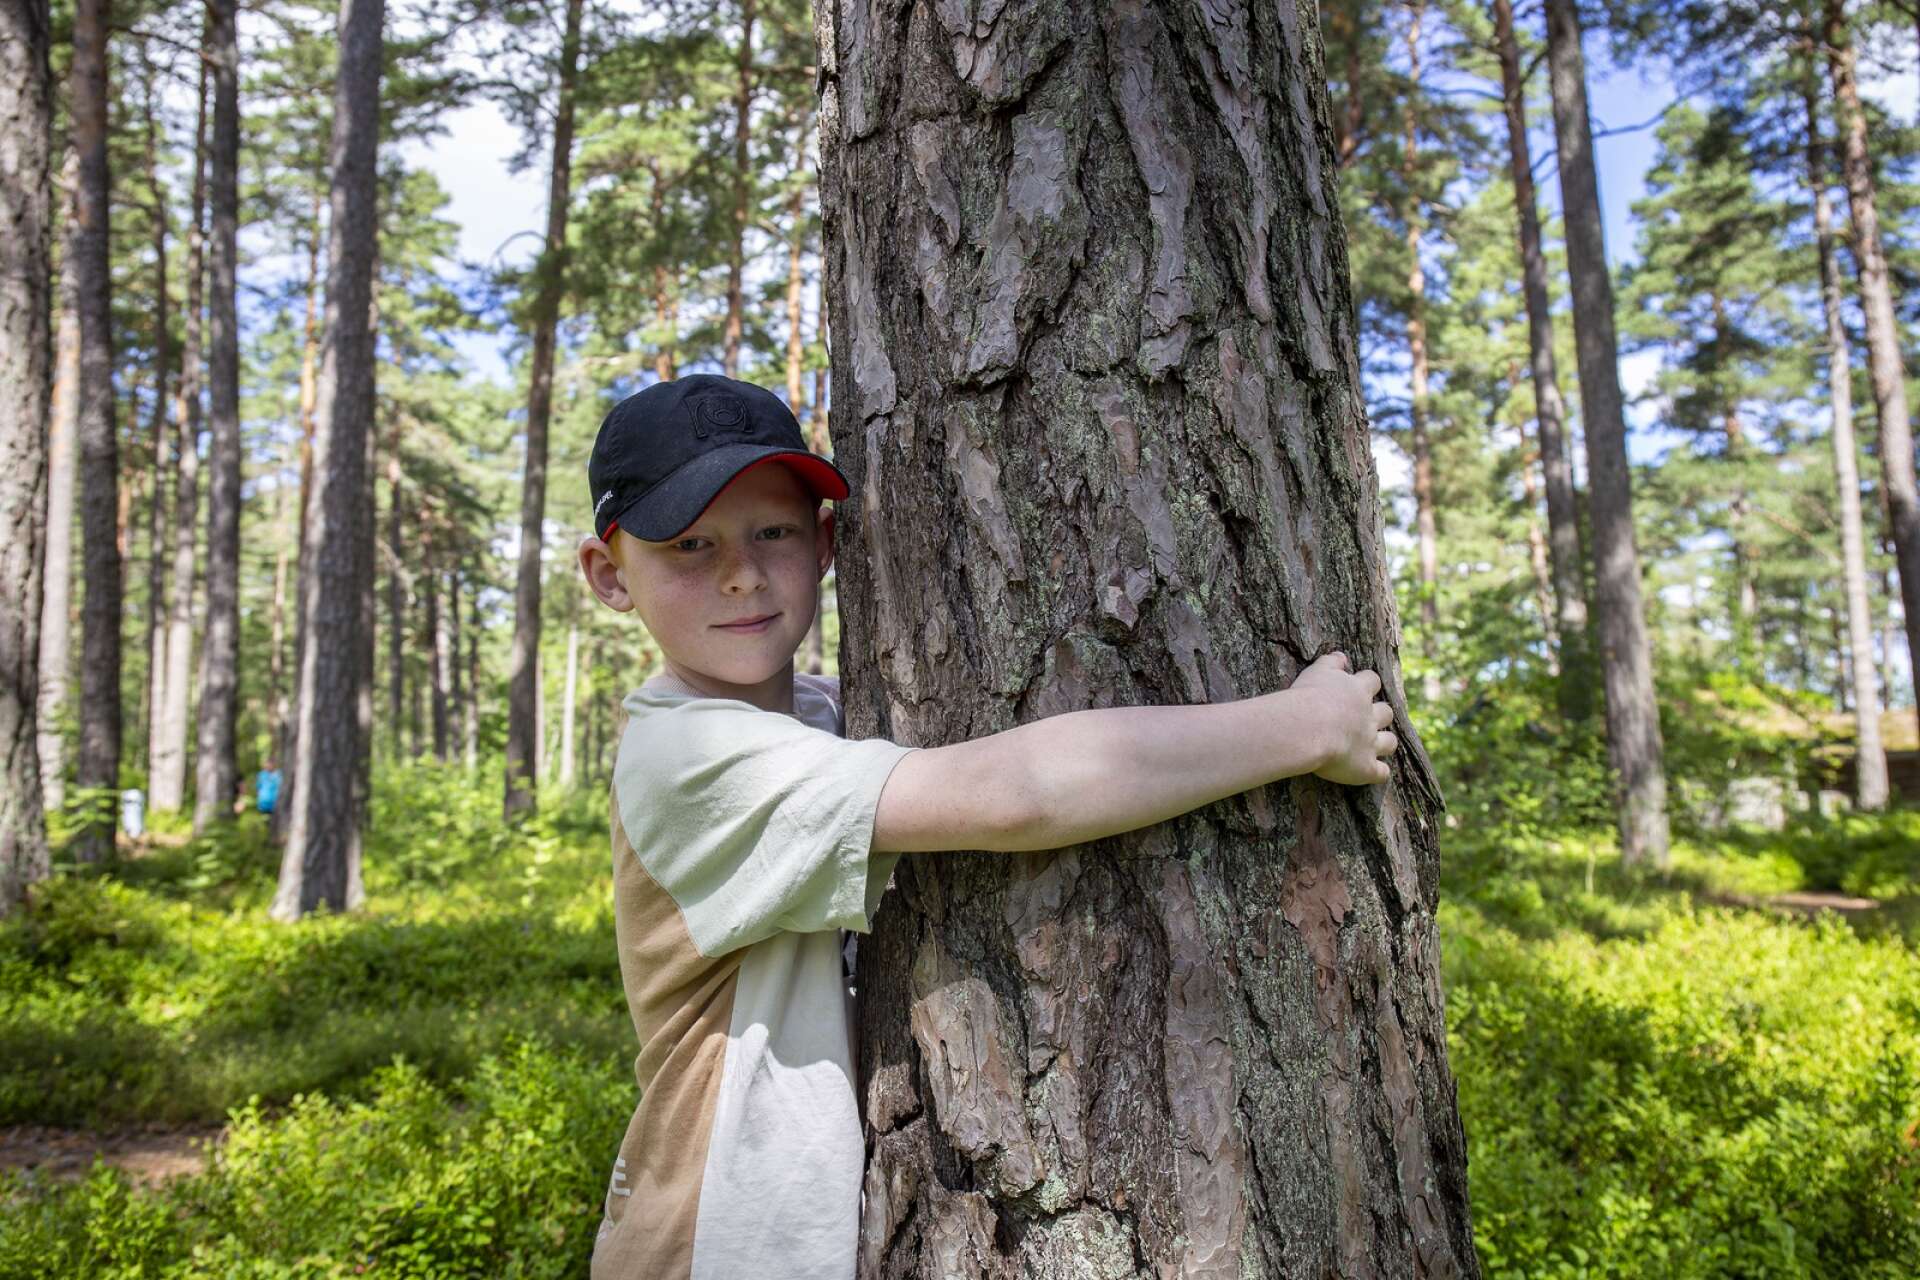 Efter turen kunde nioåriga Oskar Andersson räkna upp mängder av tips att dra nytta av om han skulle gå vilse i skogen.